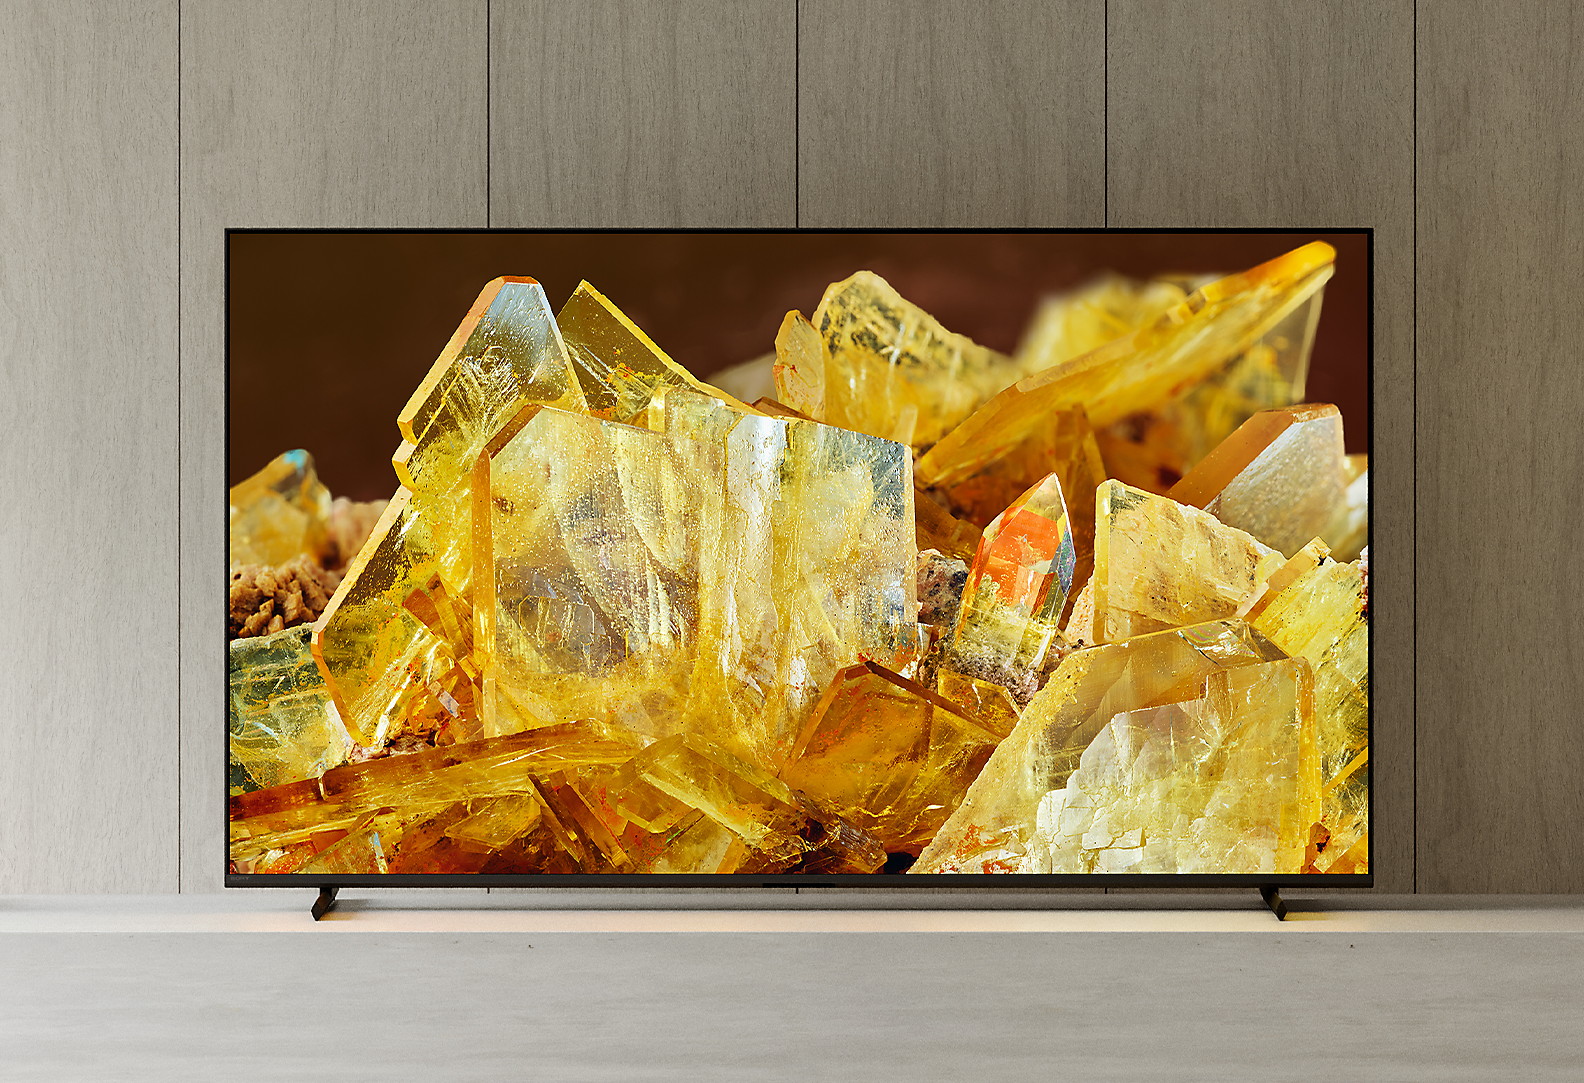 BRAVIA XR Fernseher in einem Wohnzimmer, auf dem eine Nahaufnahme bernsteinfarbenen Kristalle gezeigt wird